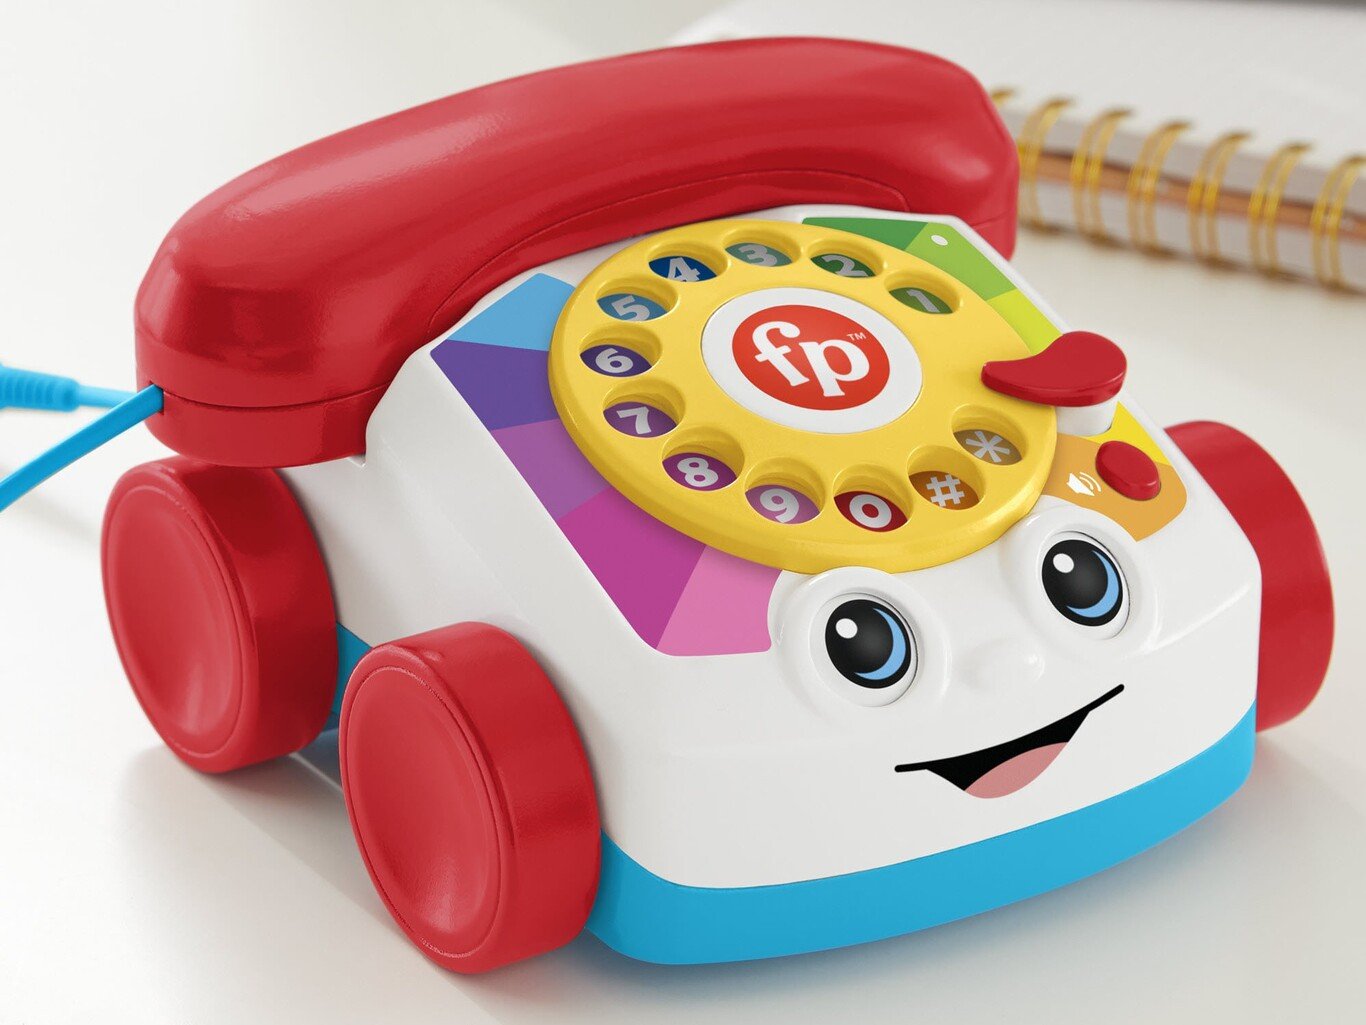 Teléfono de juguete; El clásico teléfono de juguete de Chatter Telephone finalmente será funcional